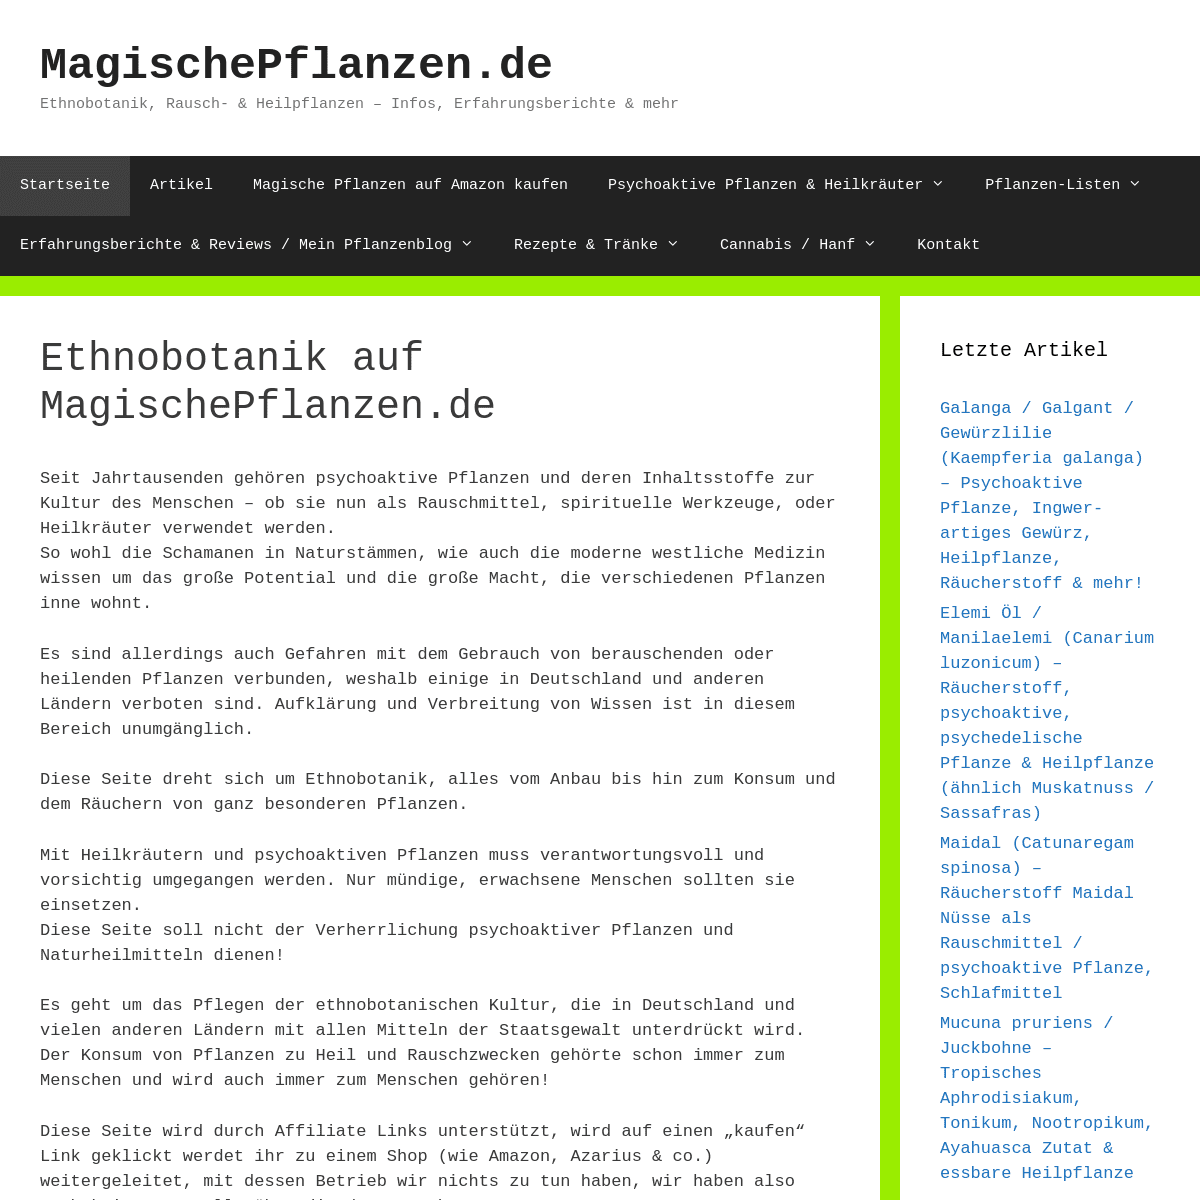 A complete backup of magischepflanzen.de